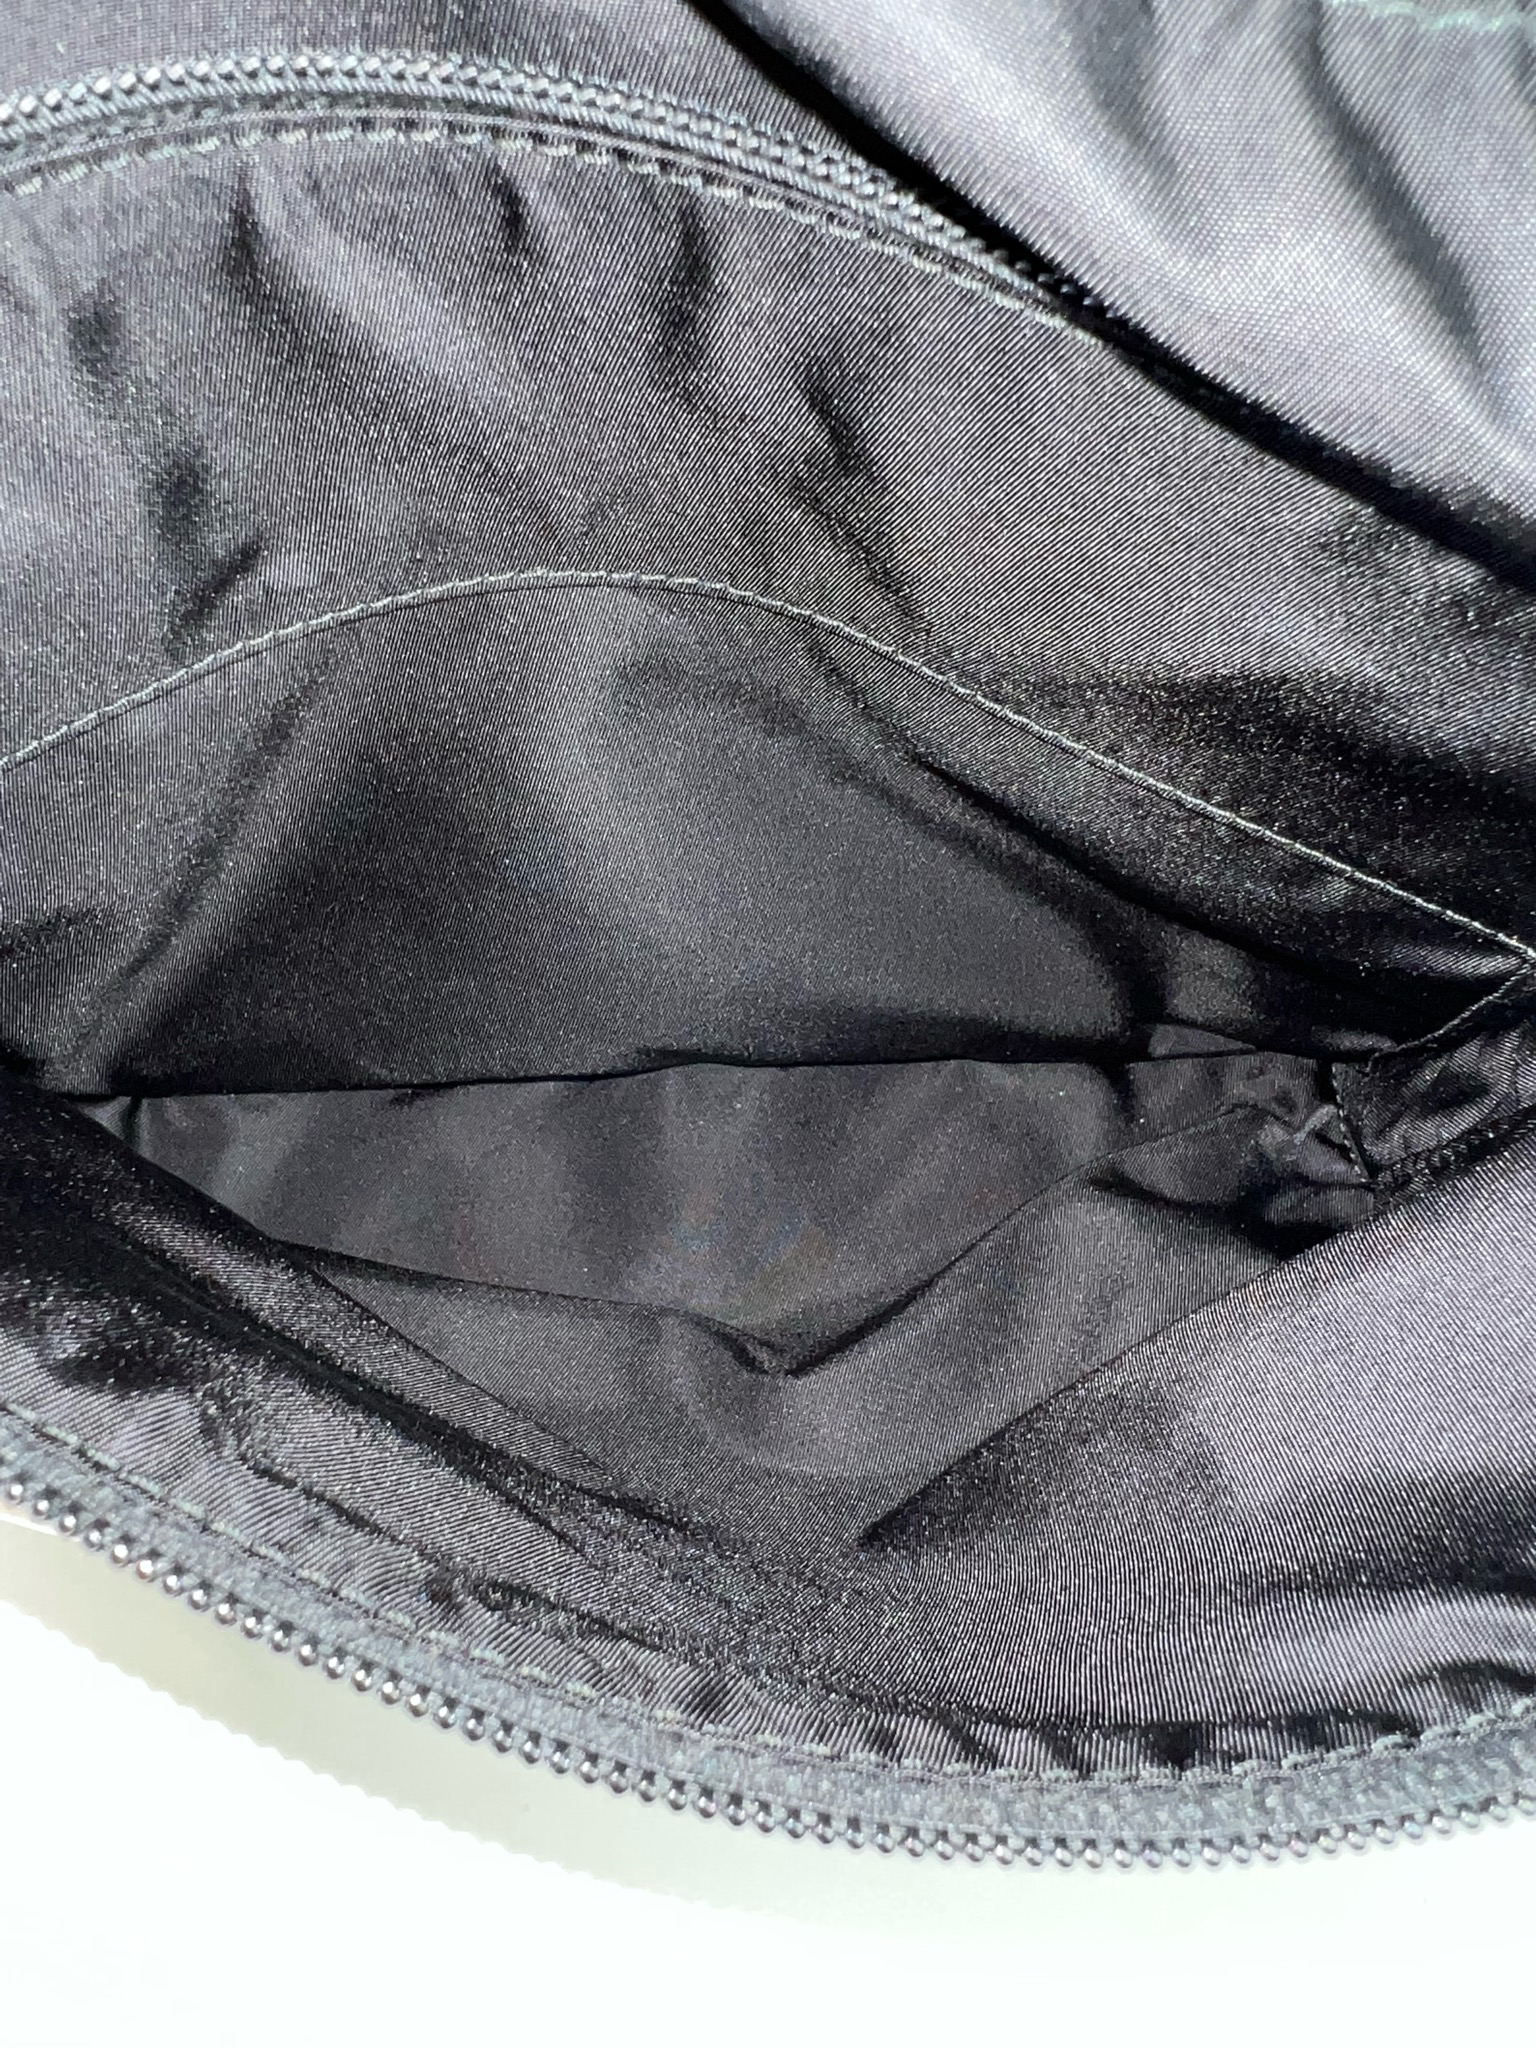 Mens Messenger bags | Prada Re-Nylon and Saffiano leather shoulder bag •  Bierzohub